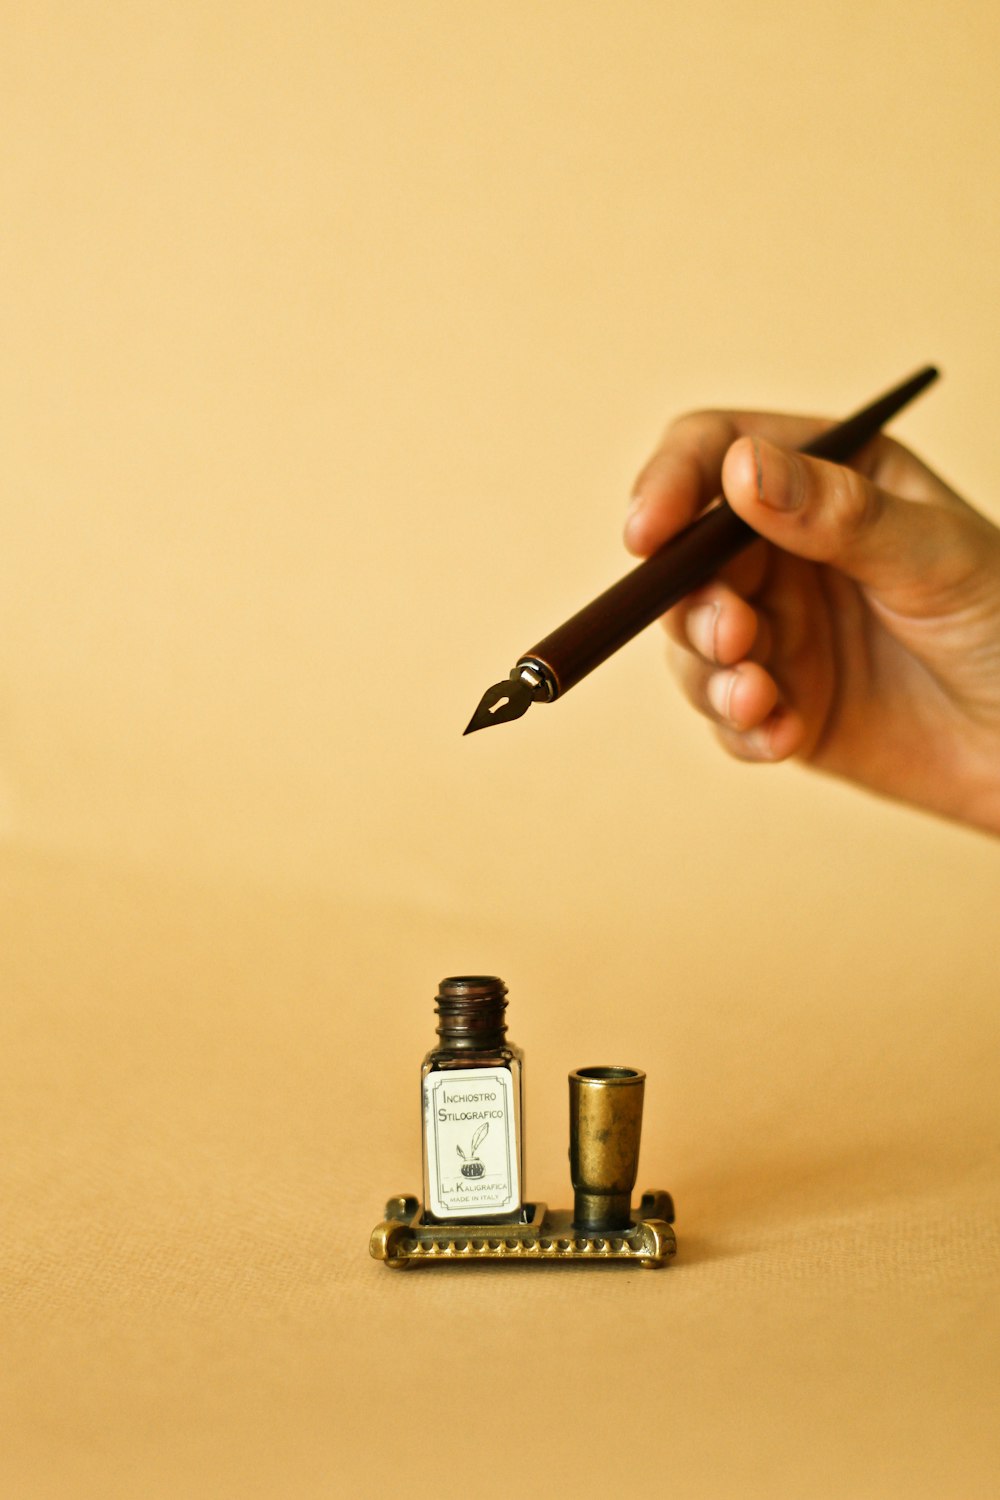 une personne tenant un stylo et écrivant sur une feuille de papier